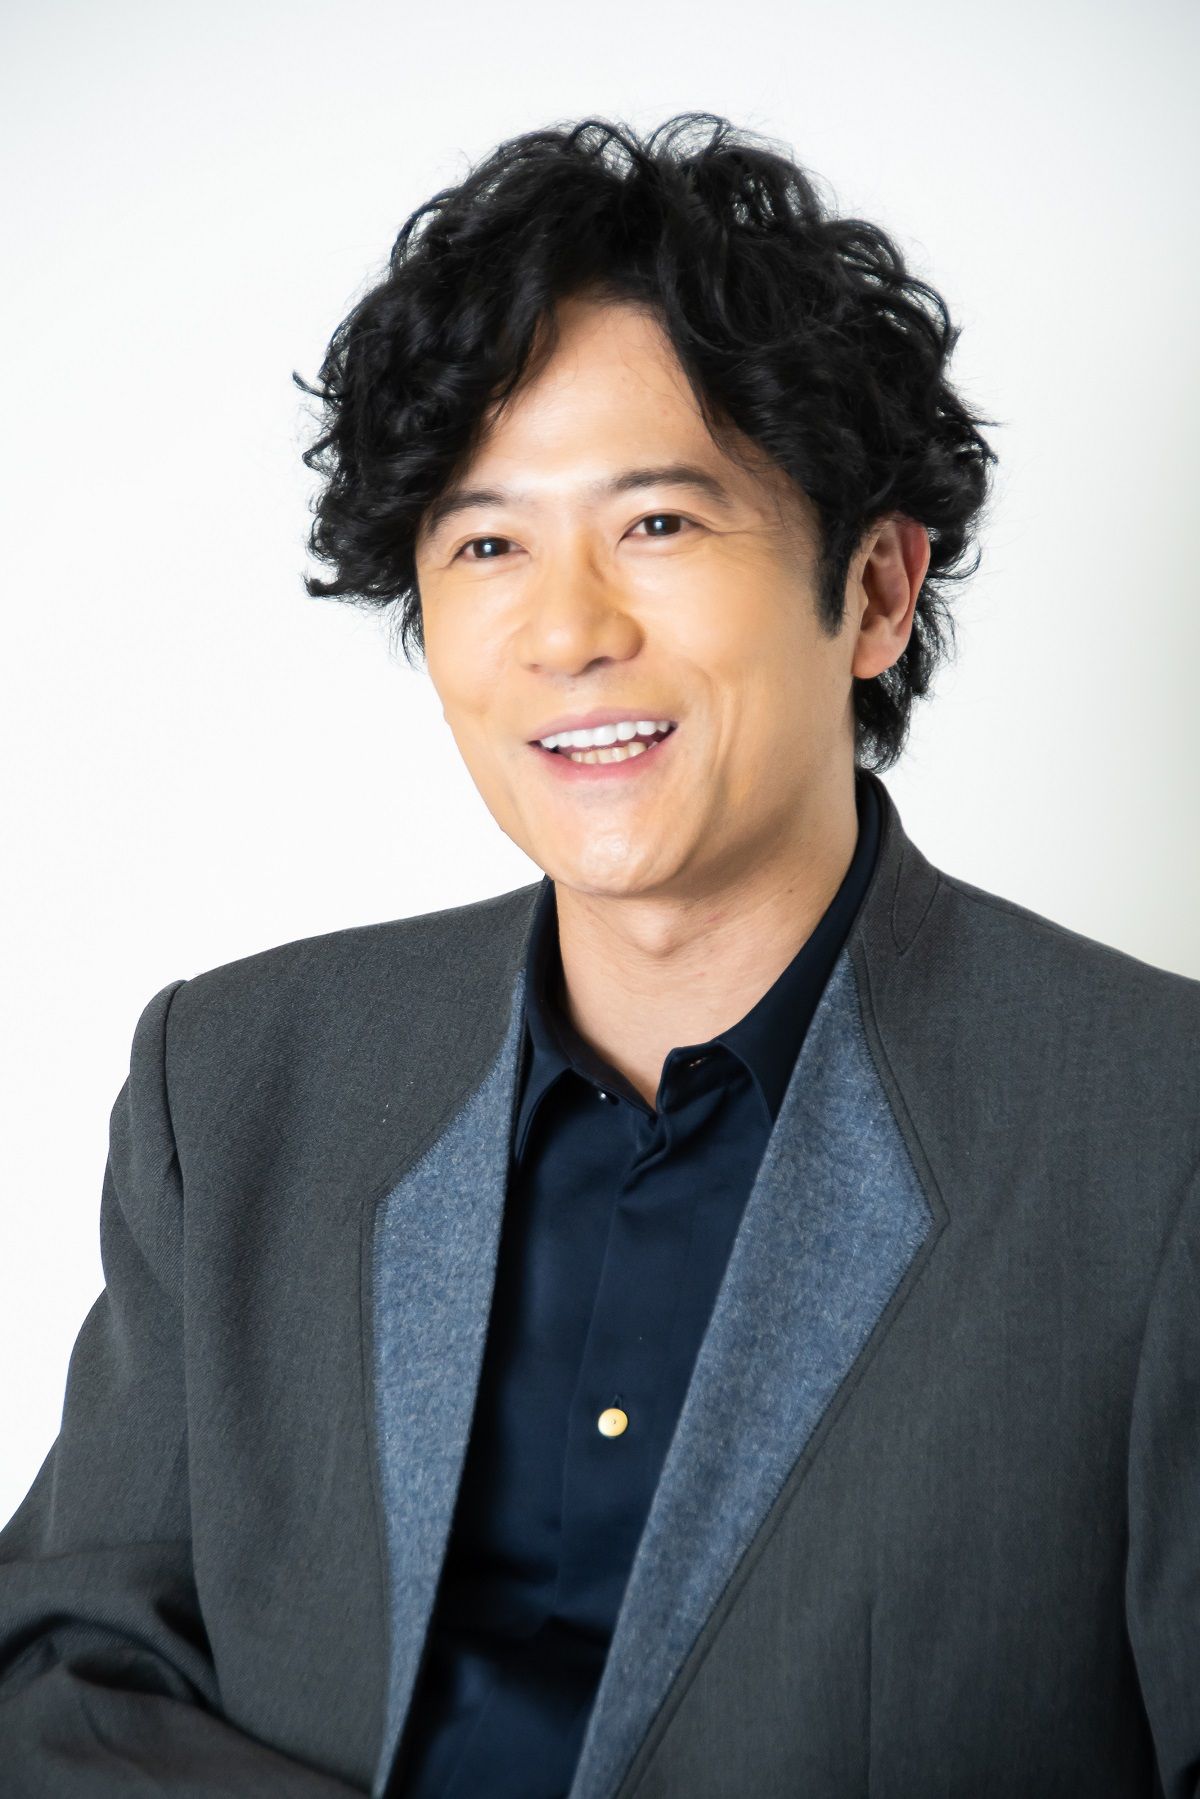 俳優・稲垣吾郎「47歳の今」を激白(1)「仕事に鮮度をなくしちゃいけない、と思ってる」の画像